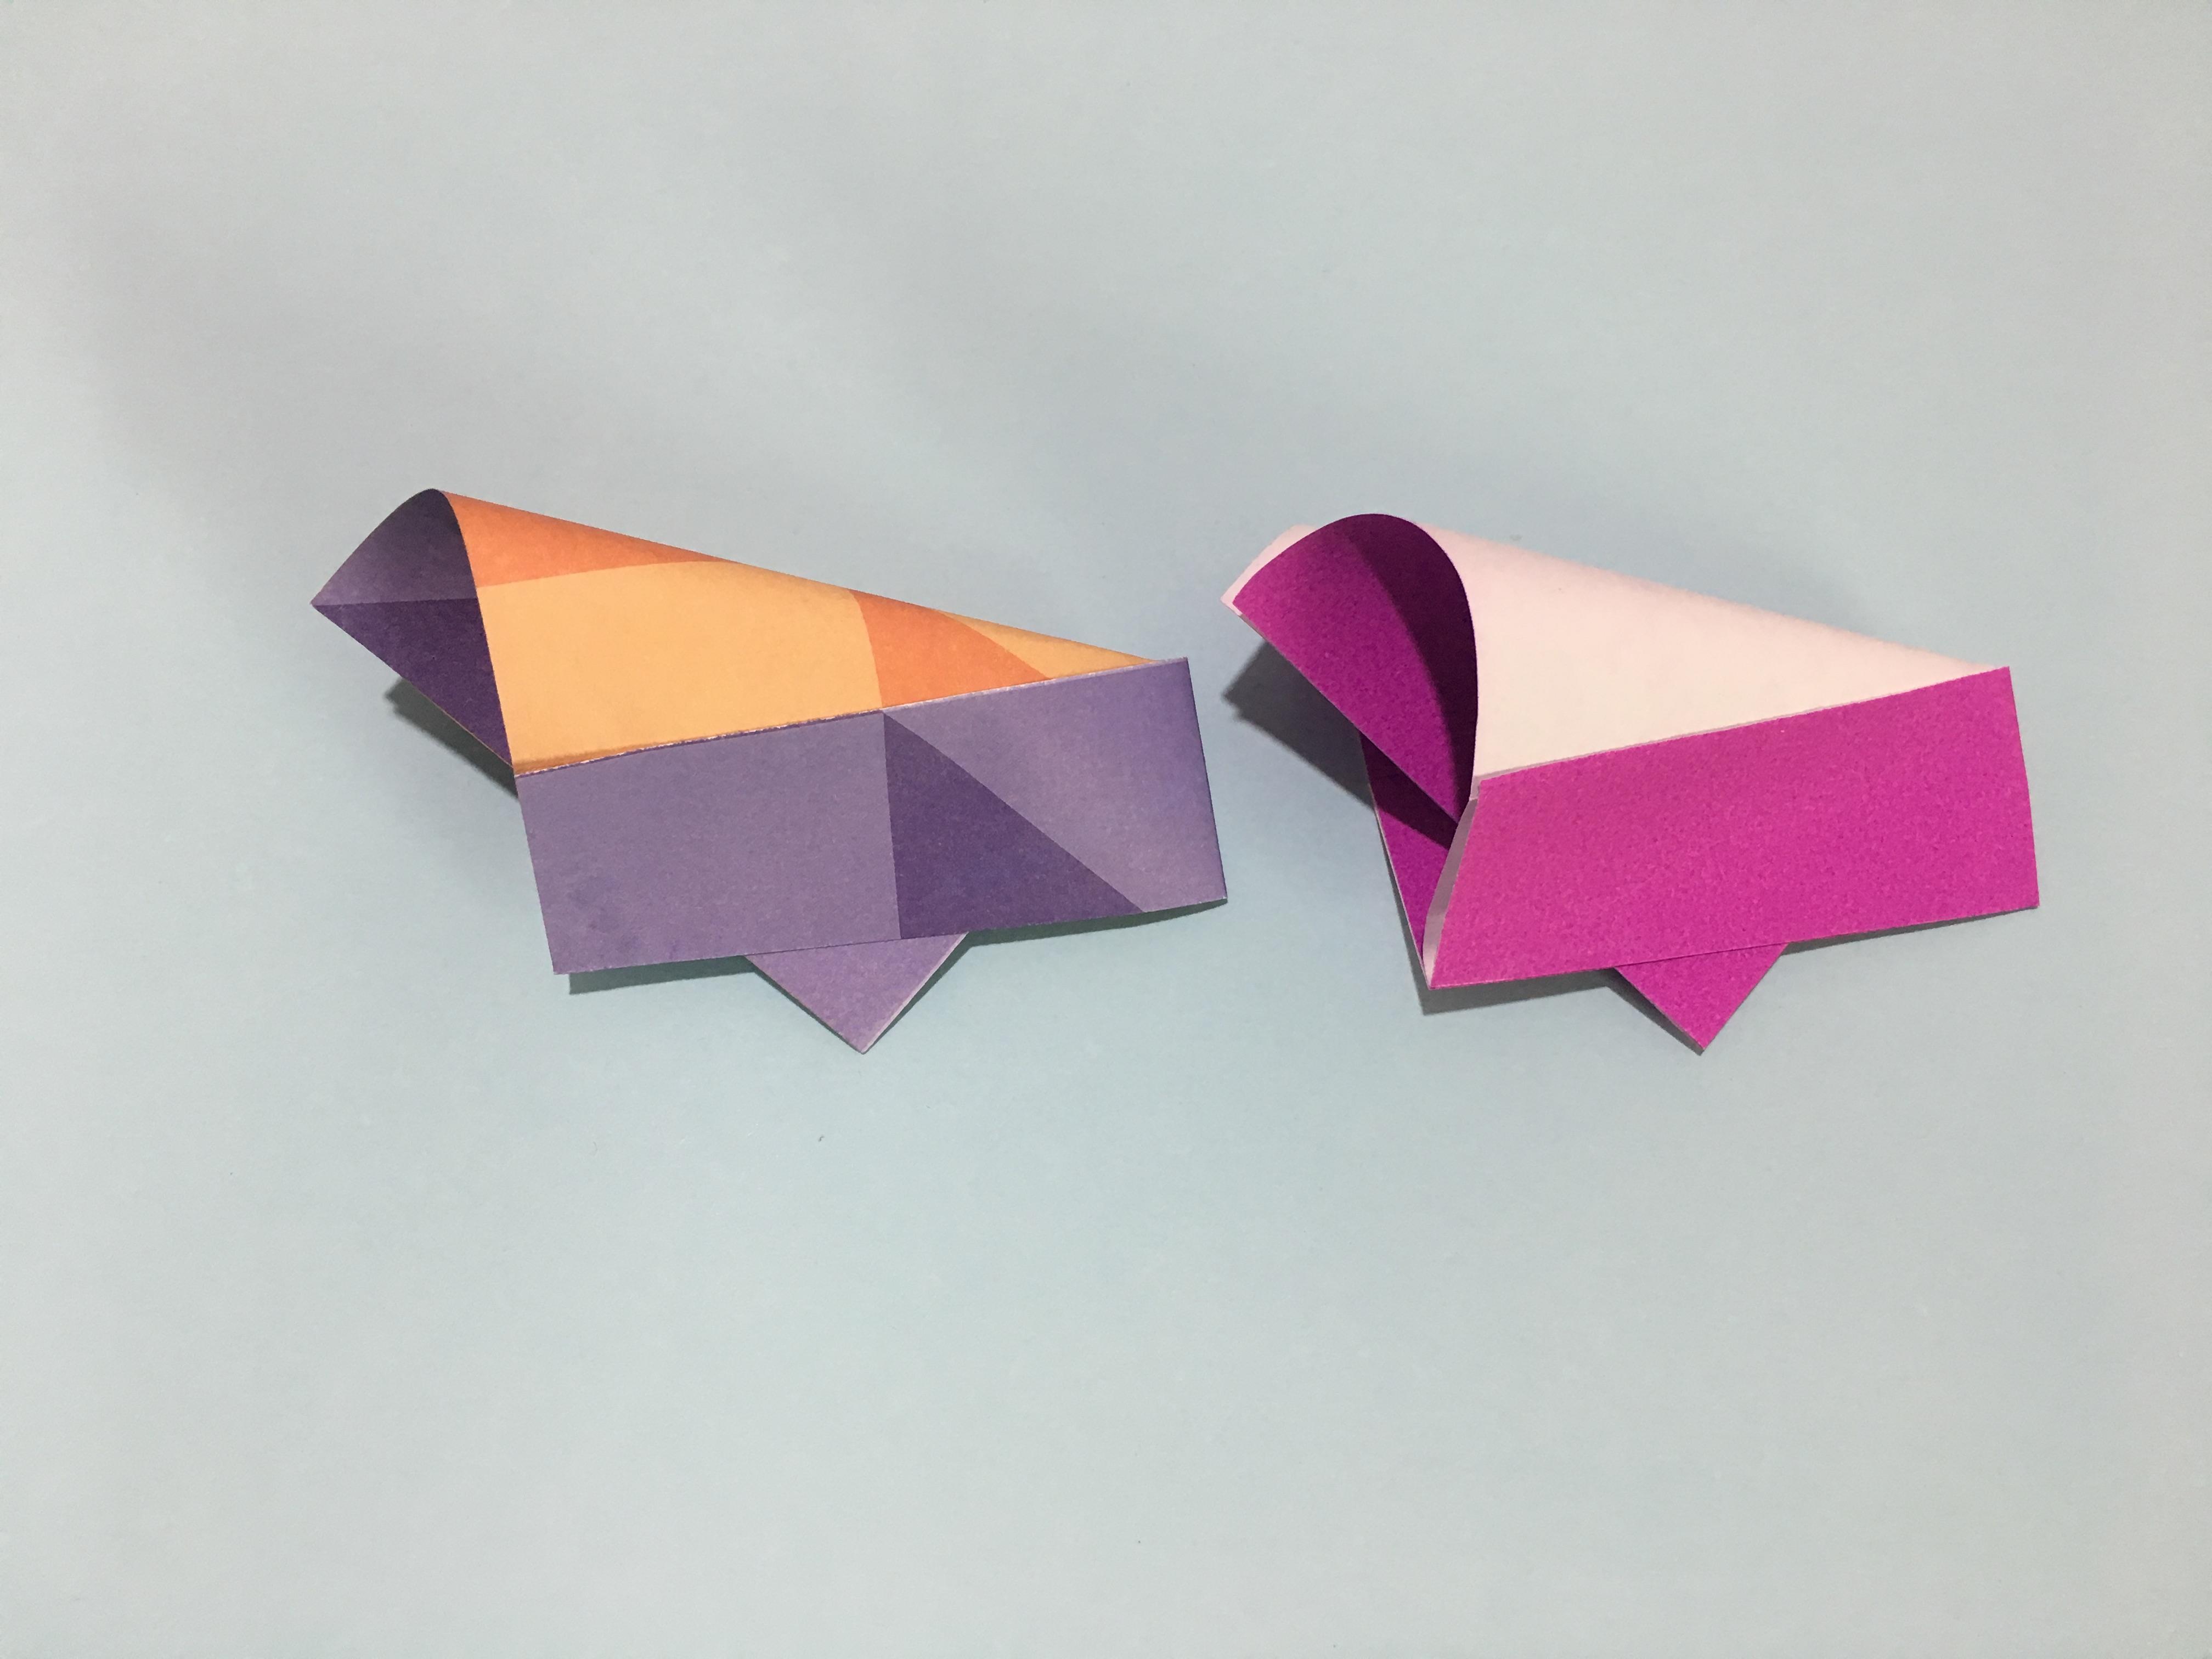 儿童手工折纸小玩具,2分钟就能学会 纸炮的折法